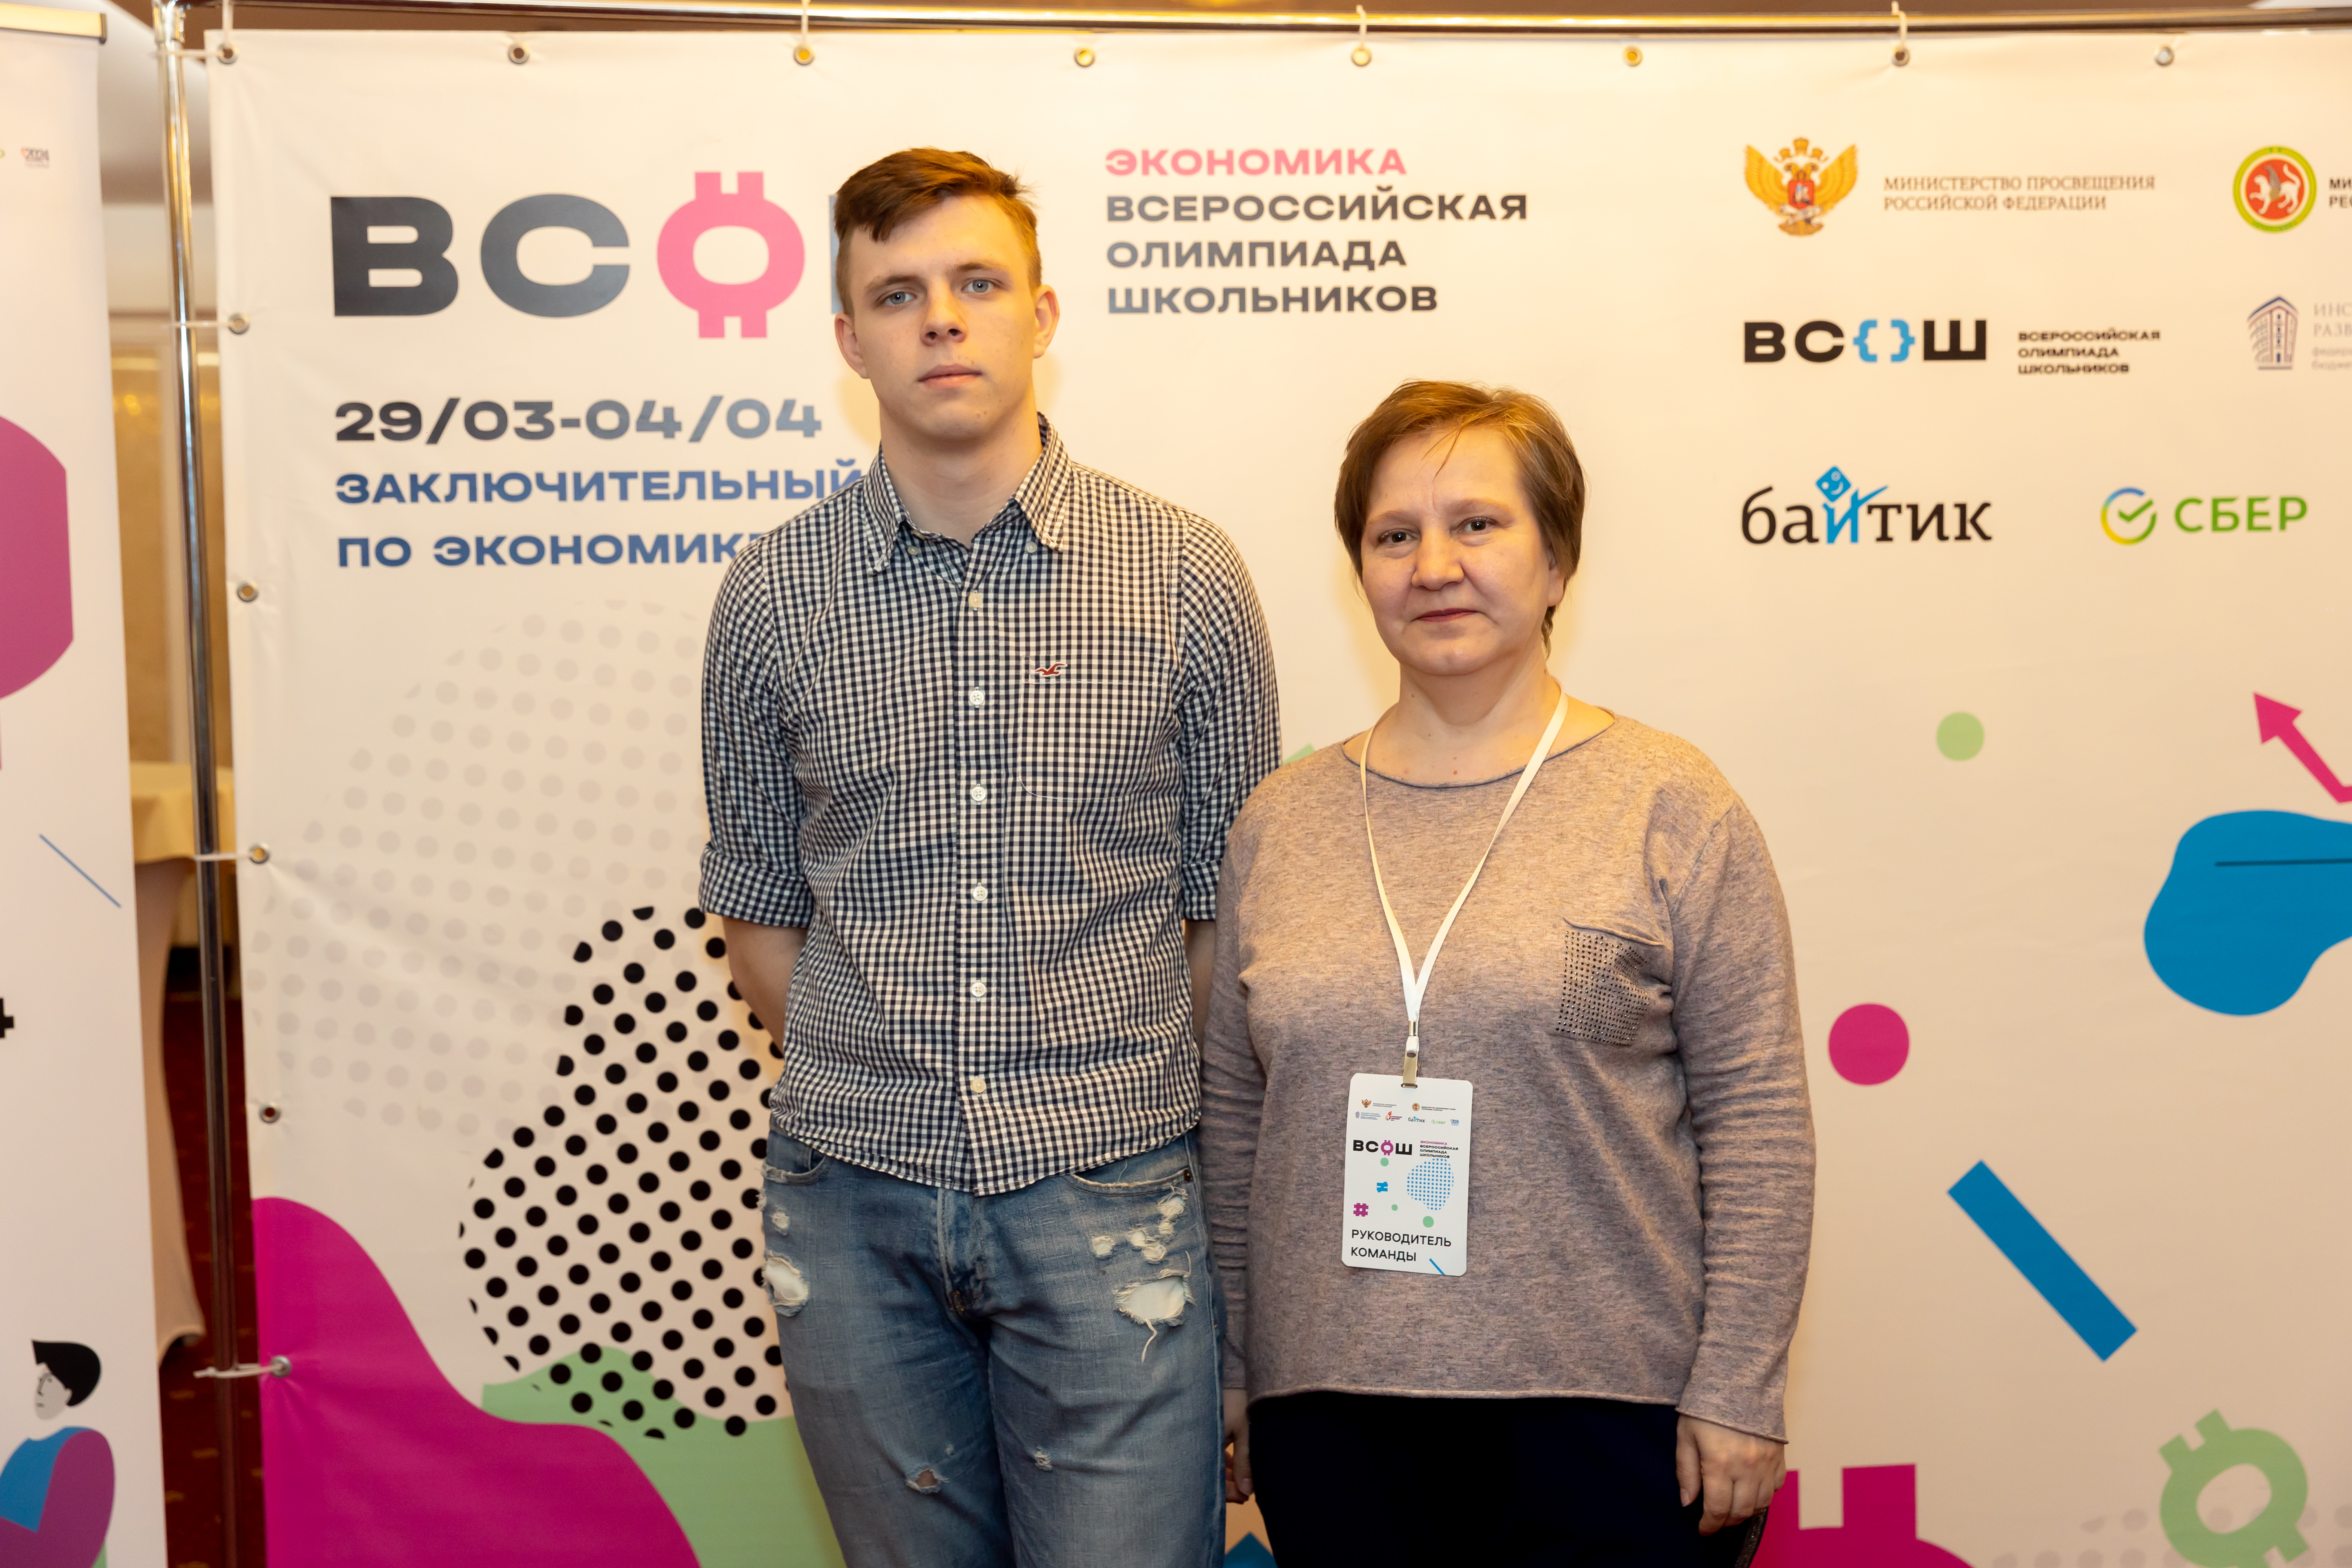 Итоги заключительного этапа всероссийской олимпиады школьников по экономике.